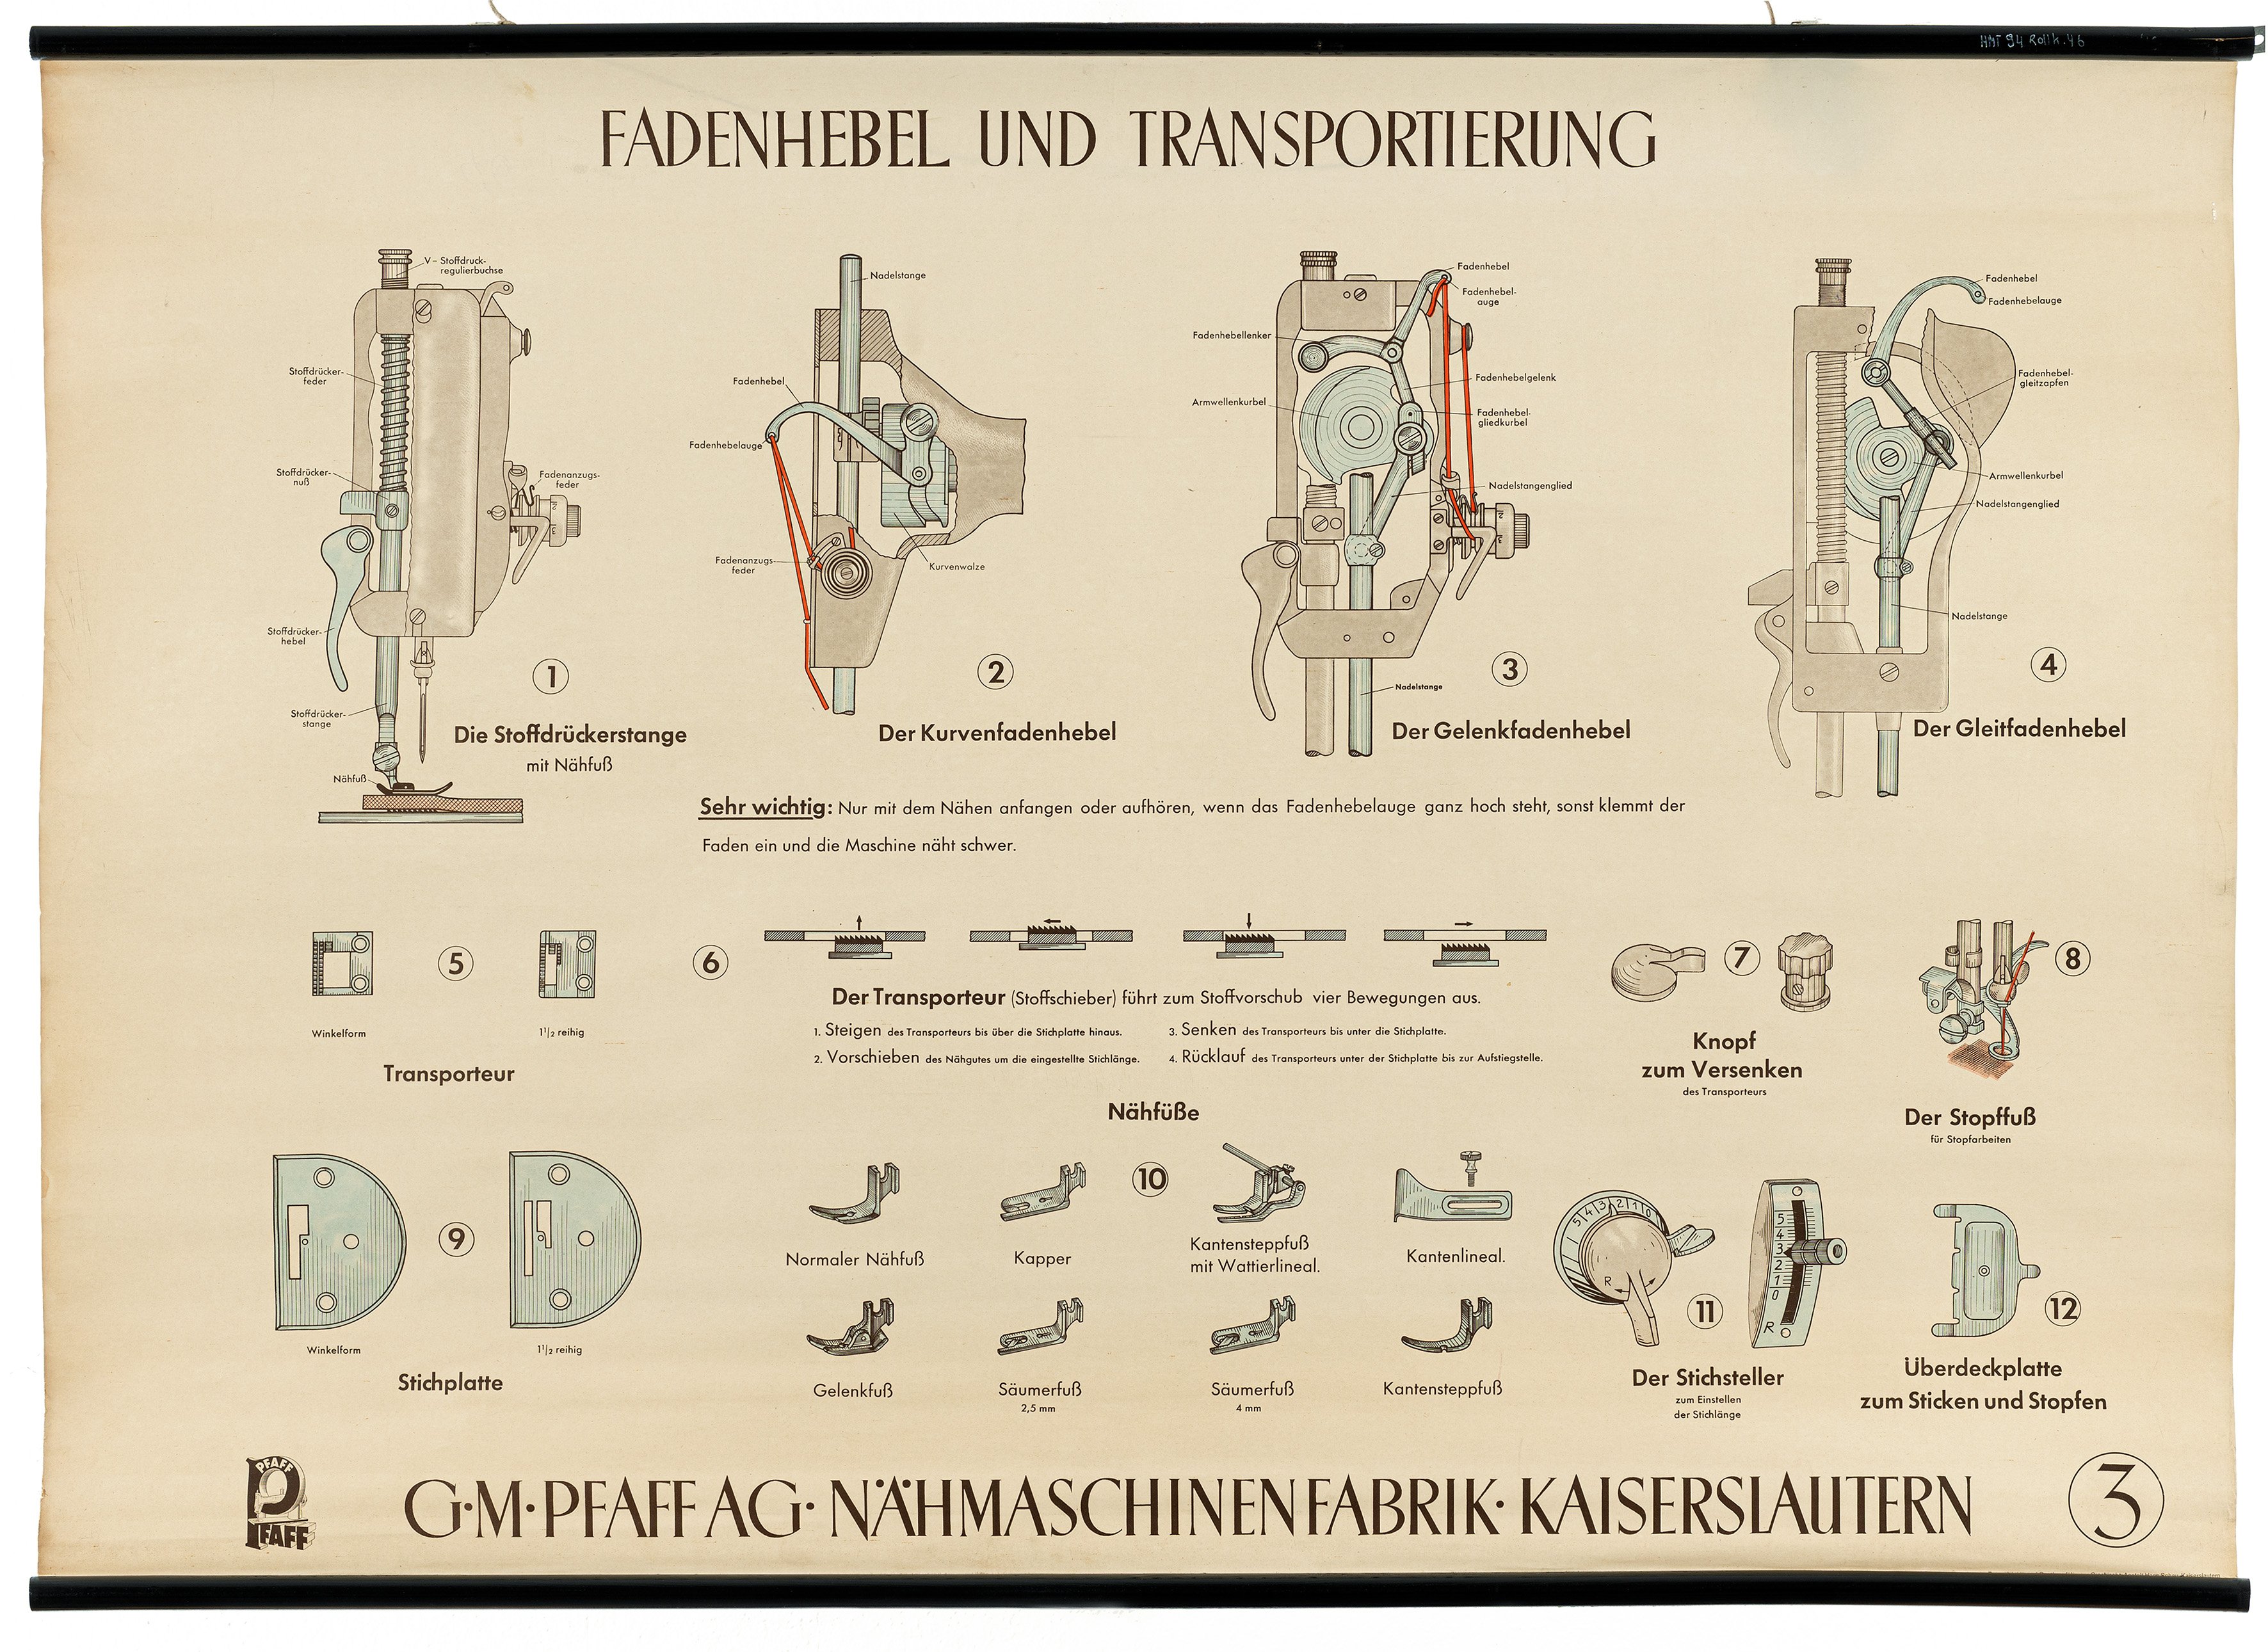 Schulwandbild "Fadenhebel und Transportierung" (Mitte Museum/Bezirksamt Mitte von Berlin / Pfaff Industrial CC0)